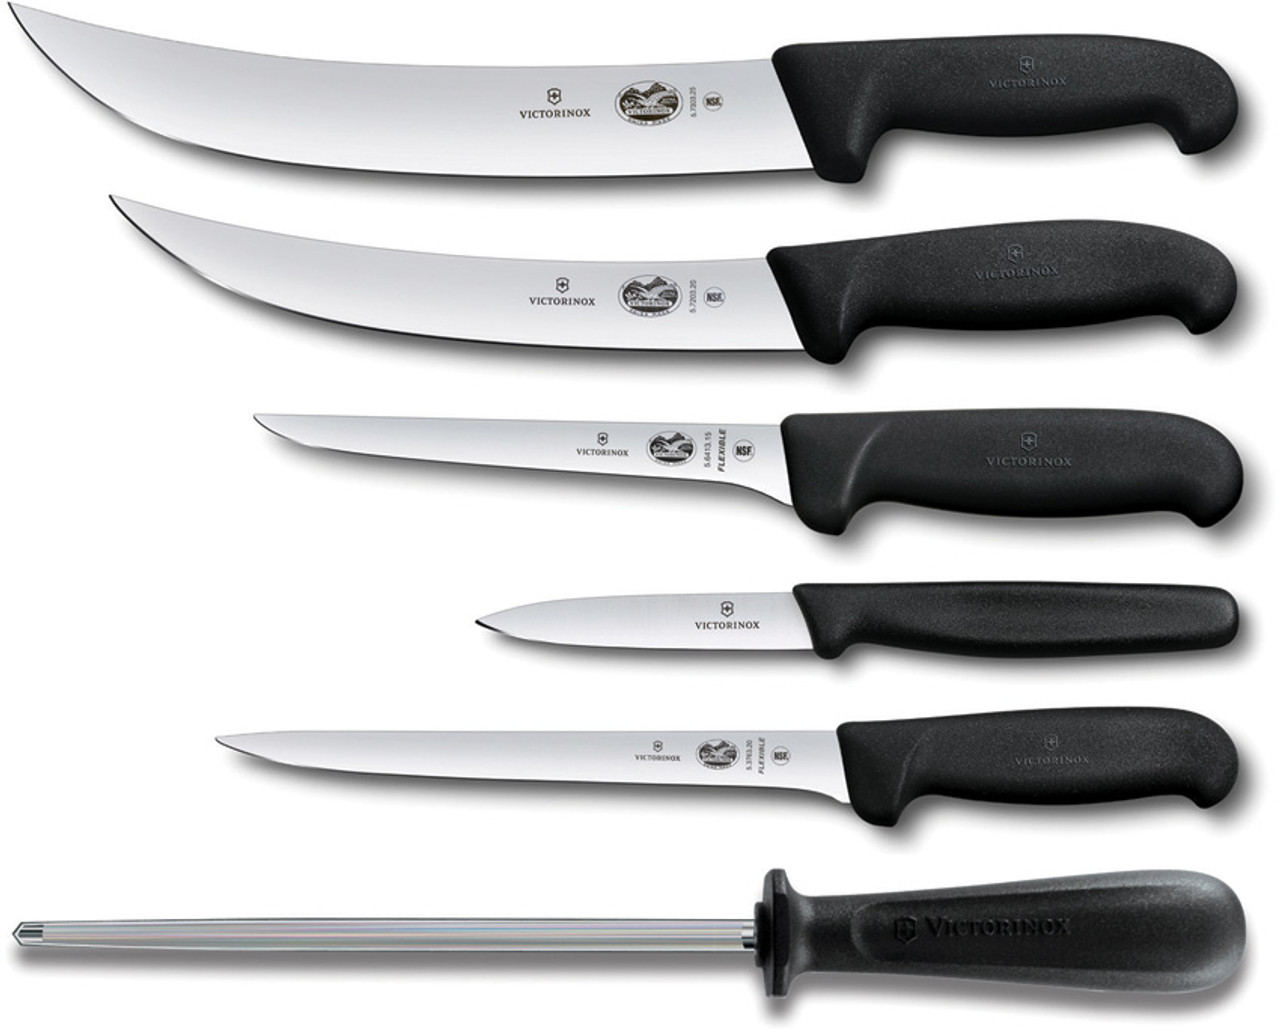 Hobart Repair Kit - 6 - Pac Knife Sales, LLC